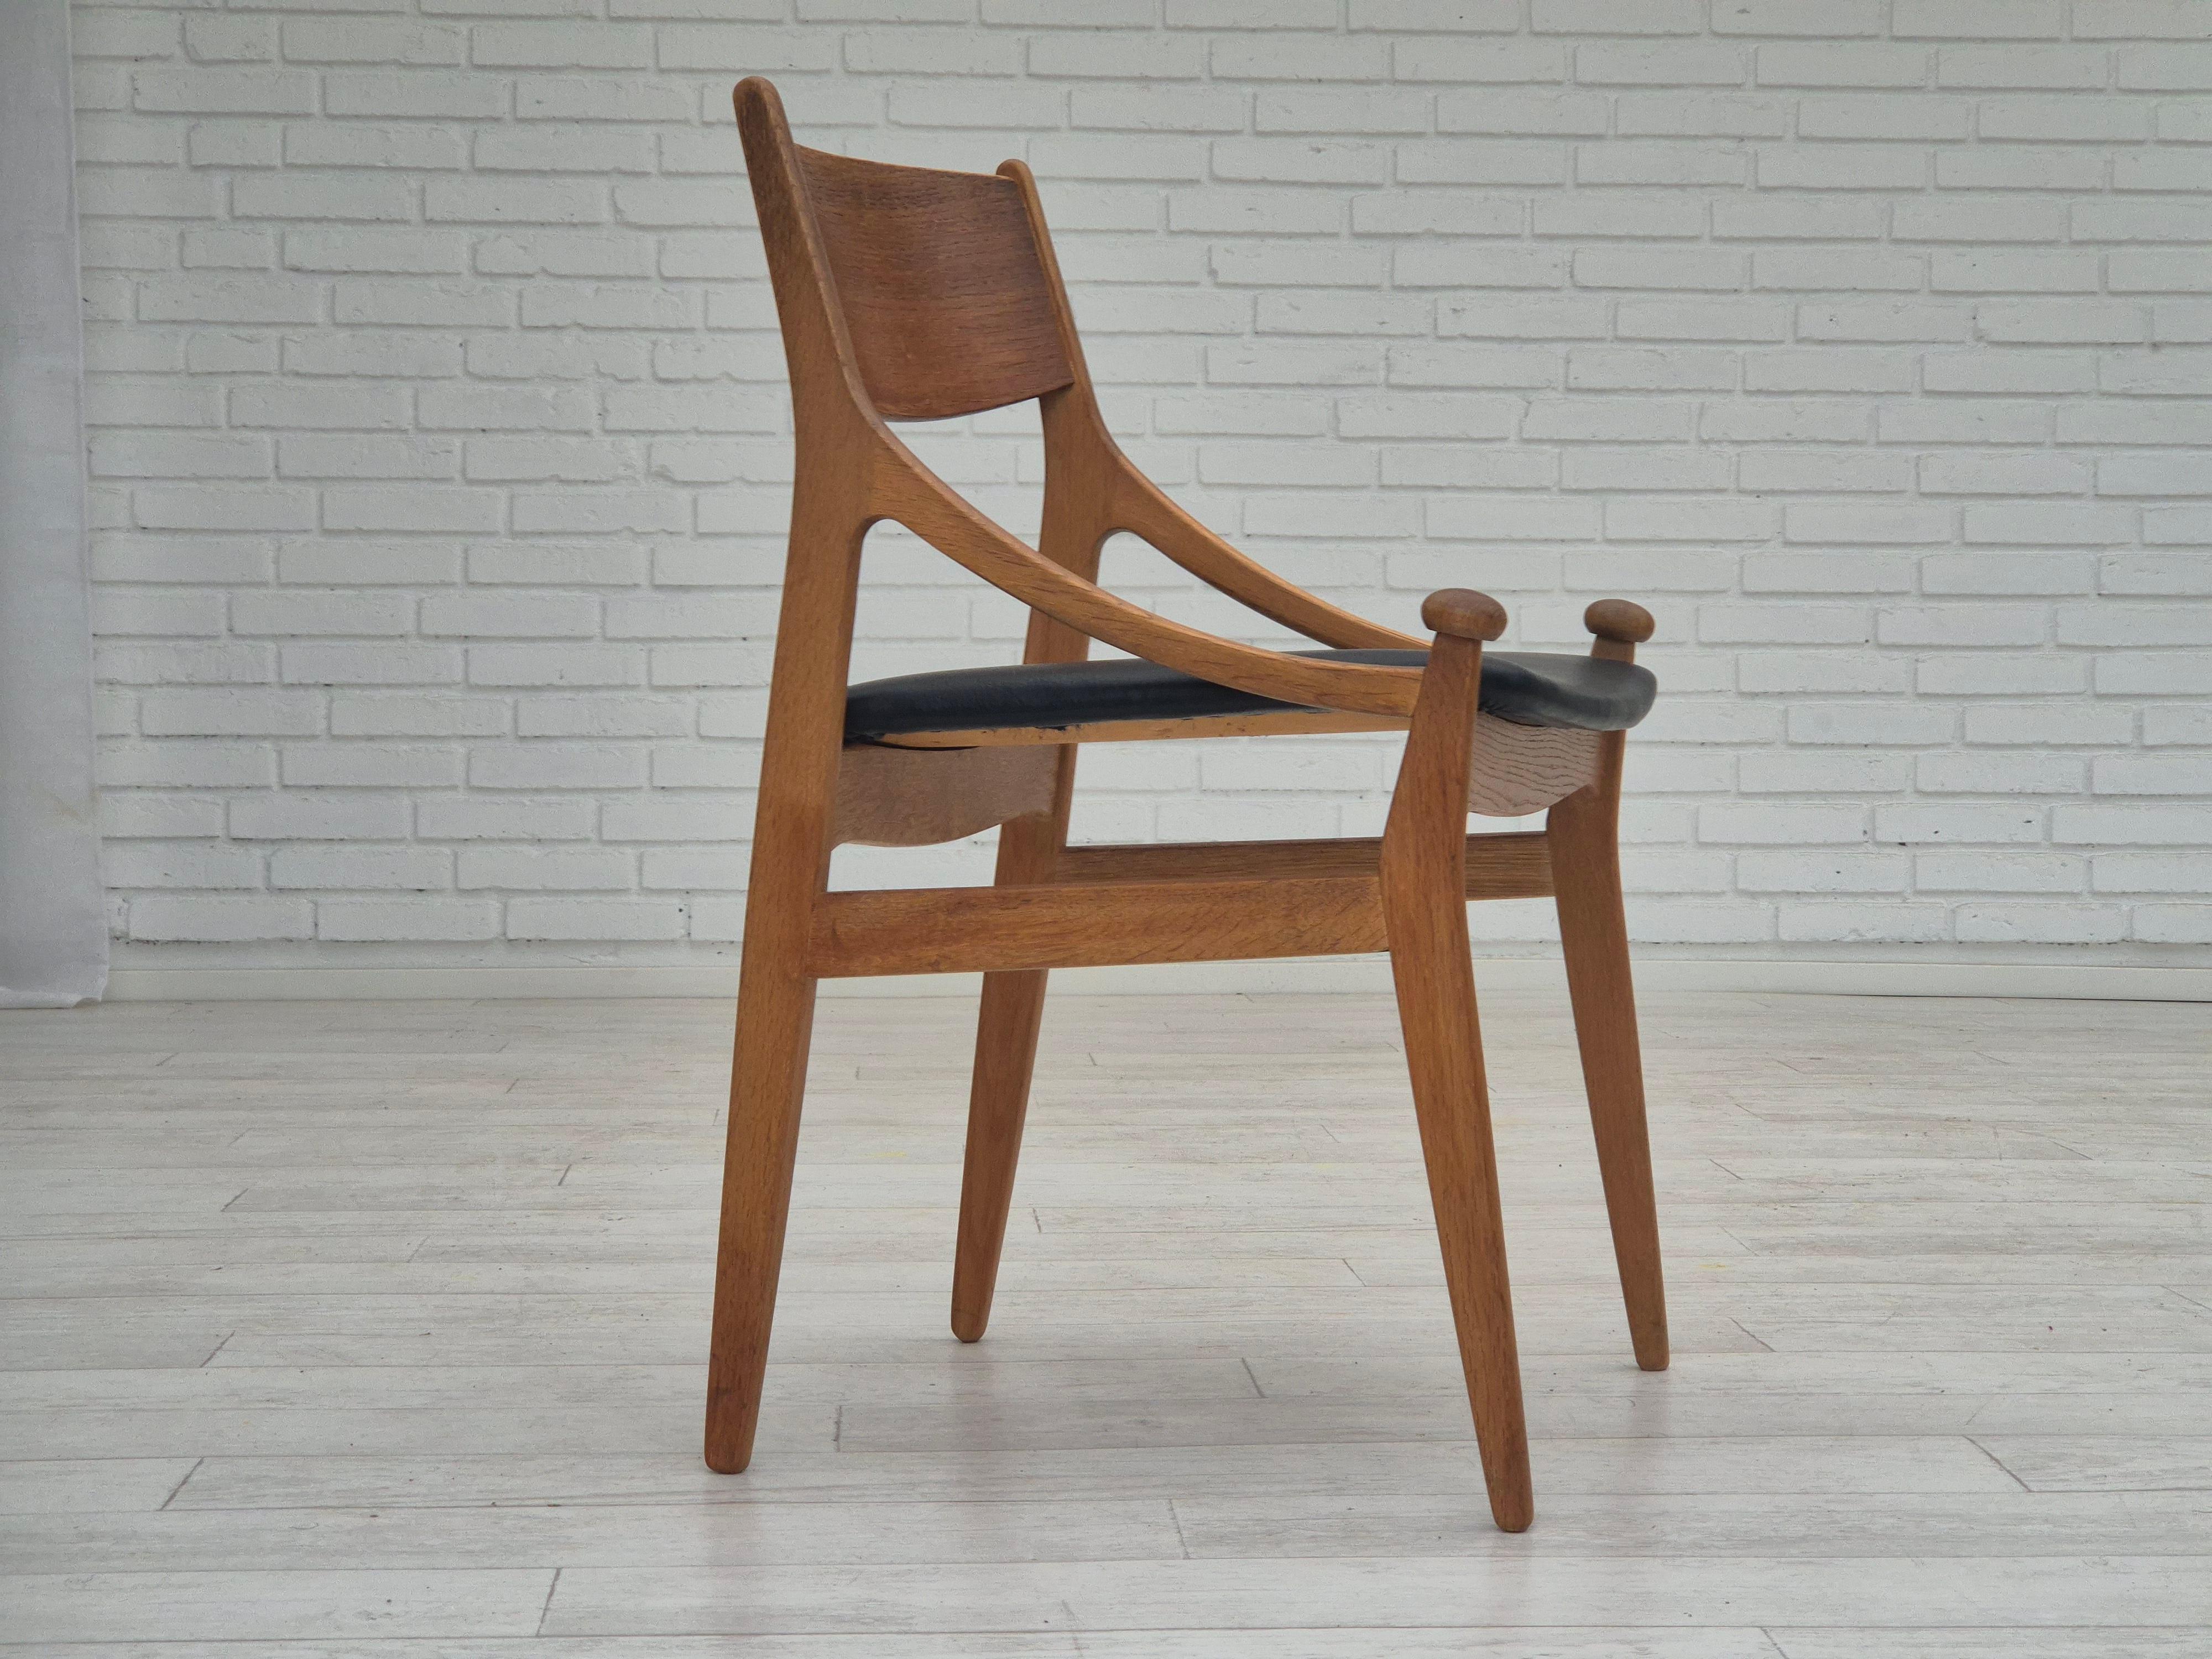 1960s, Danish design by Vestervig Eriksen for Brdr. Tromborg Møbelfabrik. New reupholstered by craftsman in quality Sørensen black leather, renewed oak wood. Manufactured by Danish furniture manufacturer in about 1965s.